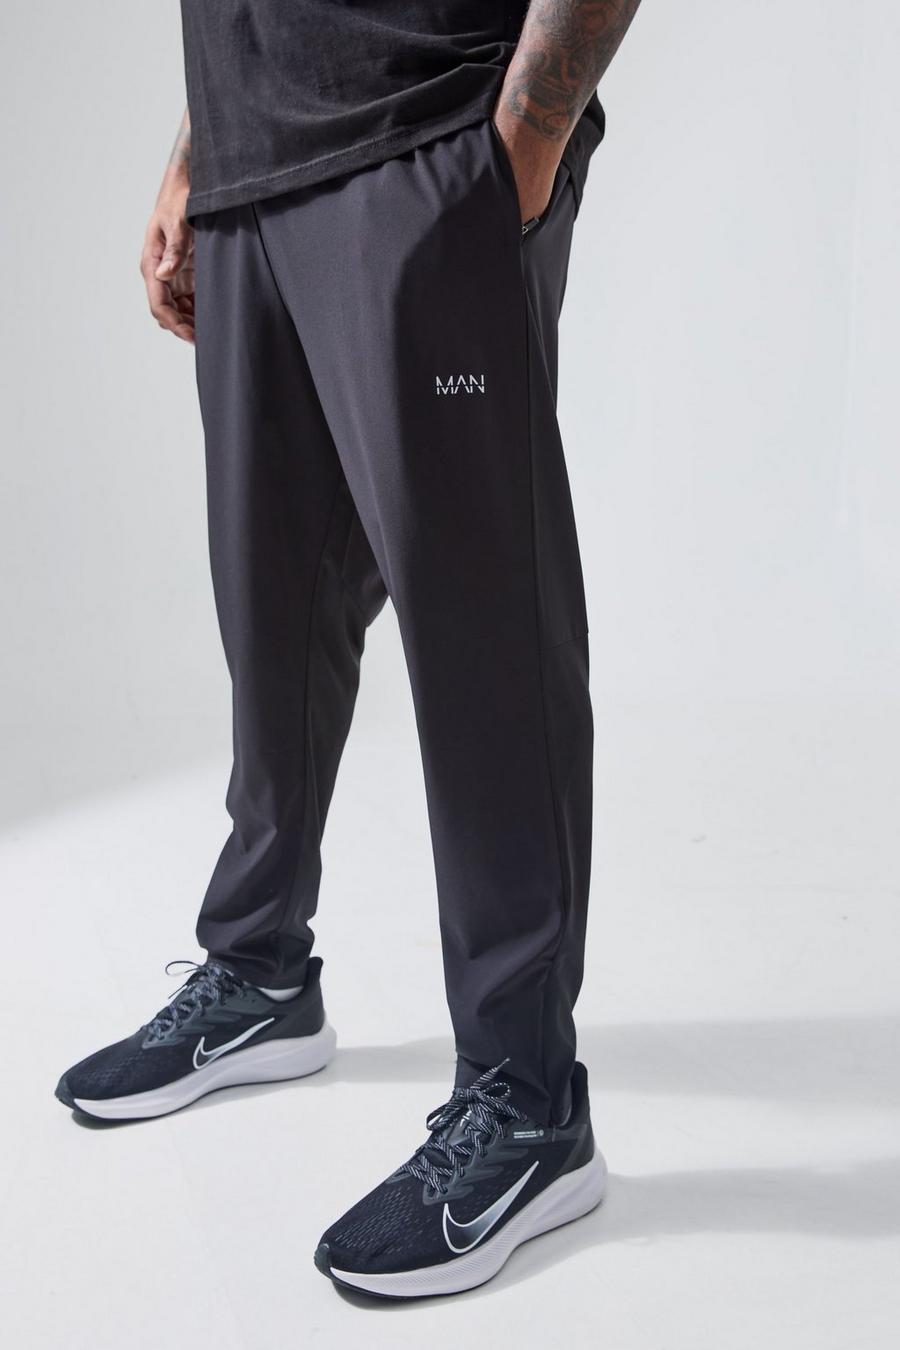 Pantalón deportivo Plus MAN Active deportivo resistente con cremallera en los bolsillos, Black